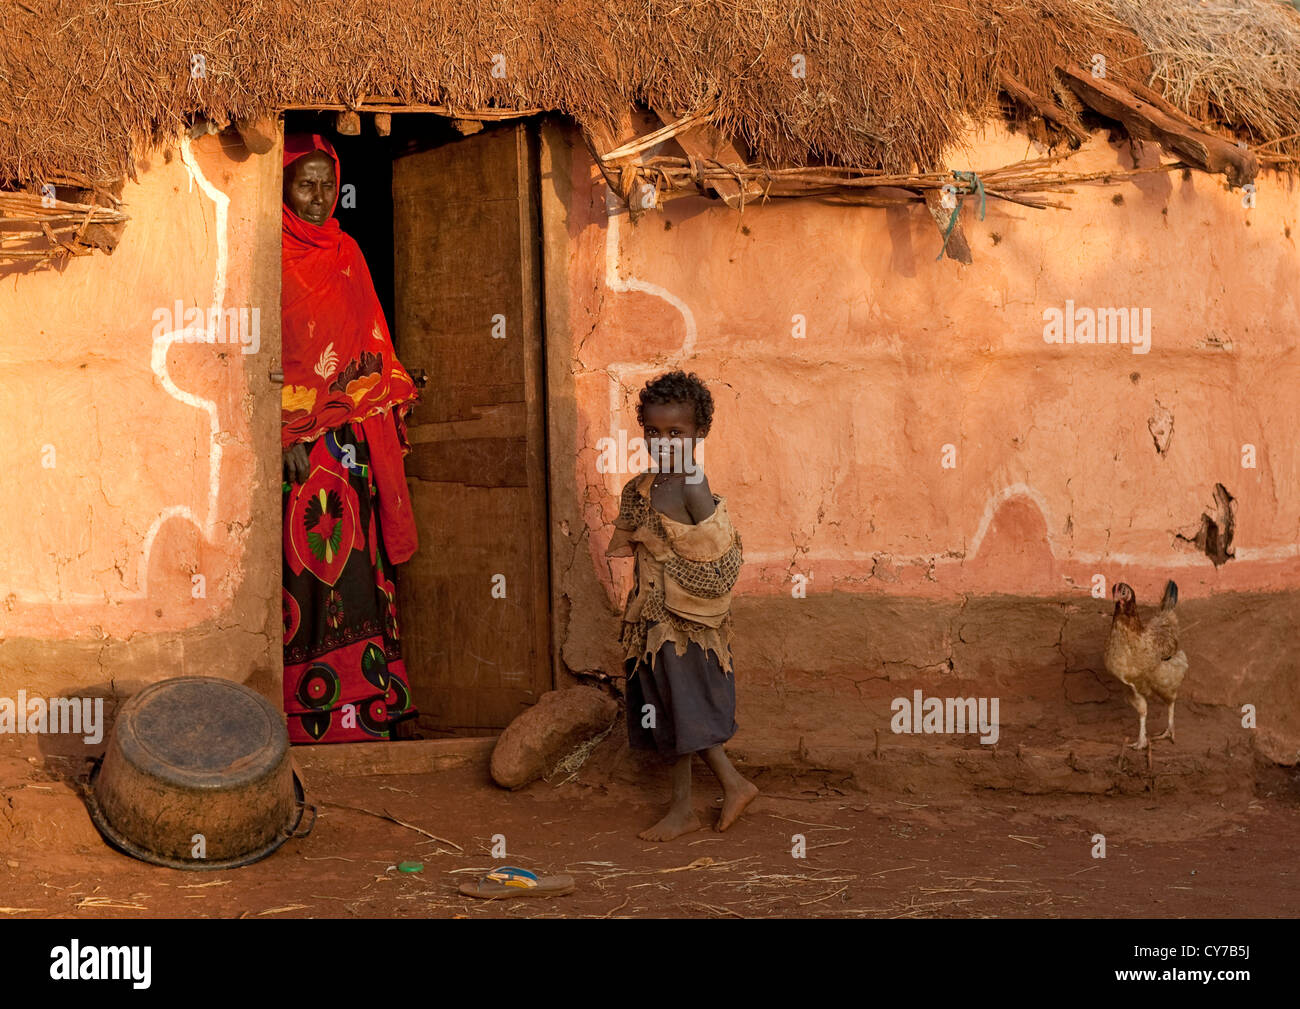 Borana Tribe, Kenya Stock Photo